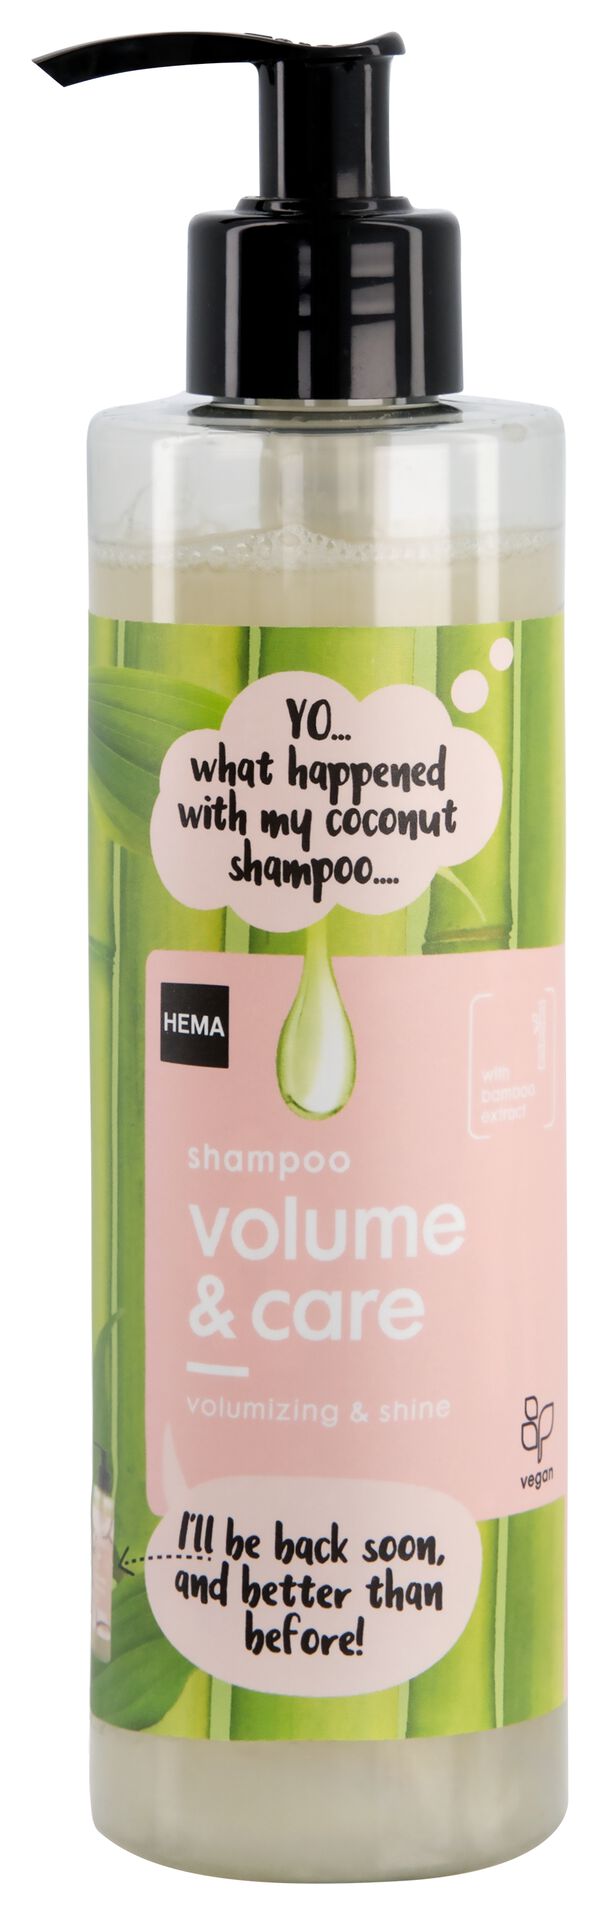 Shampoo, Volume & Care, 300 ml - 11087101 - HEMA